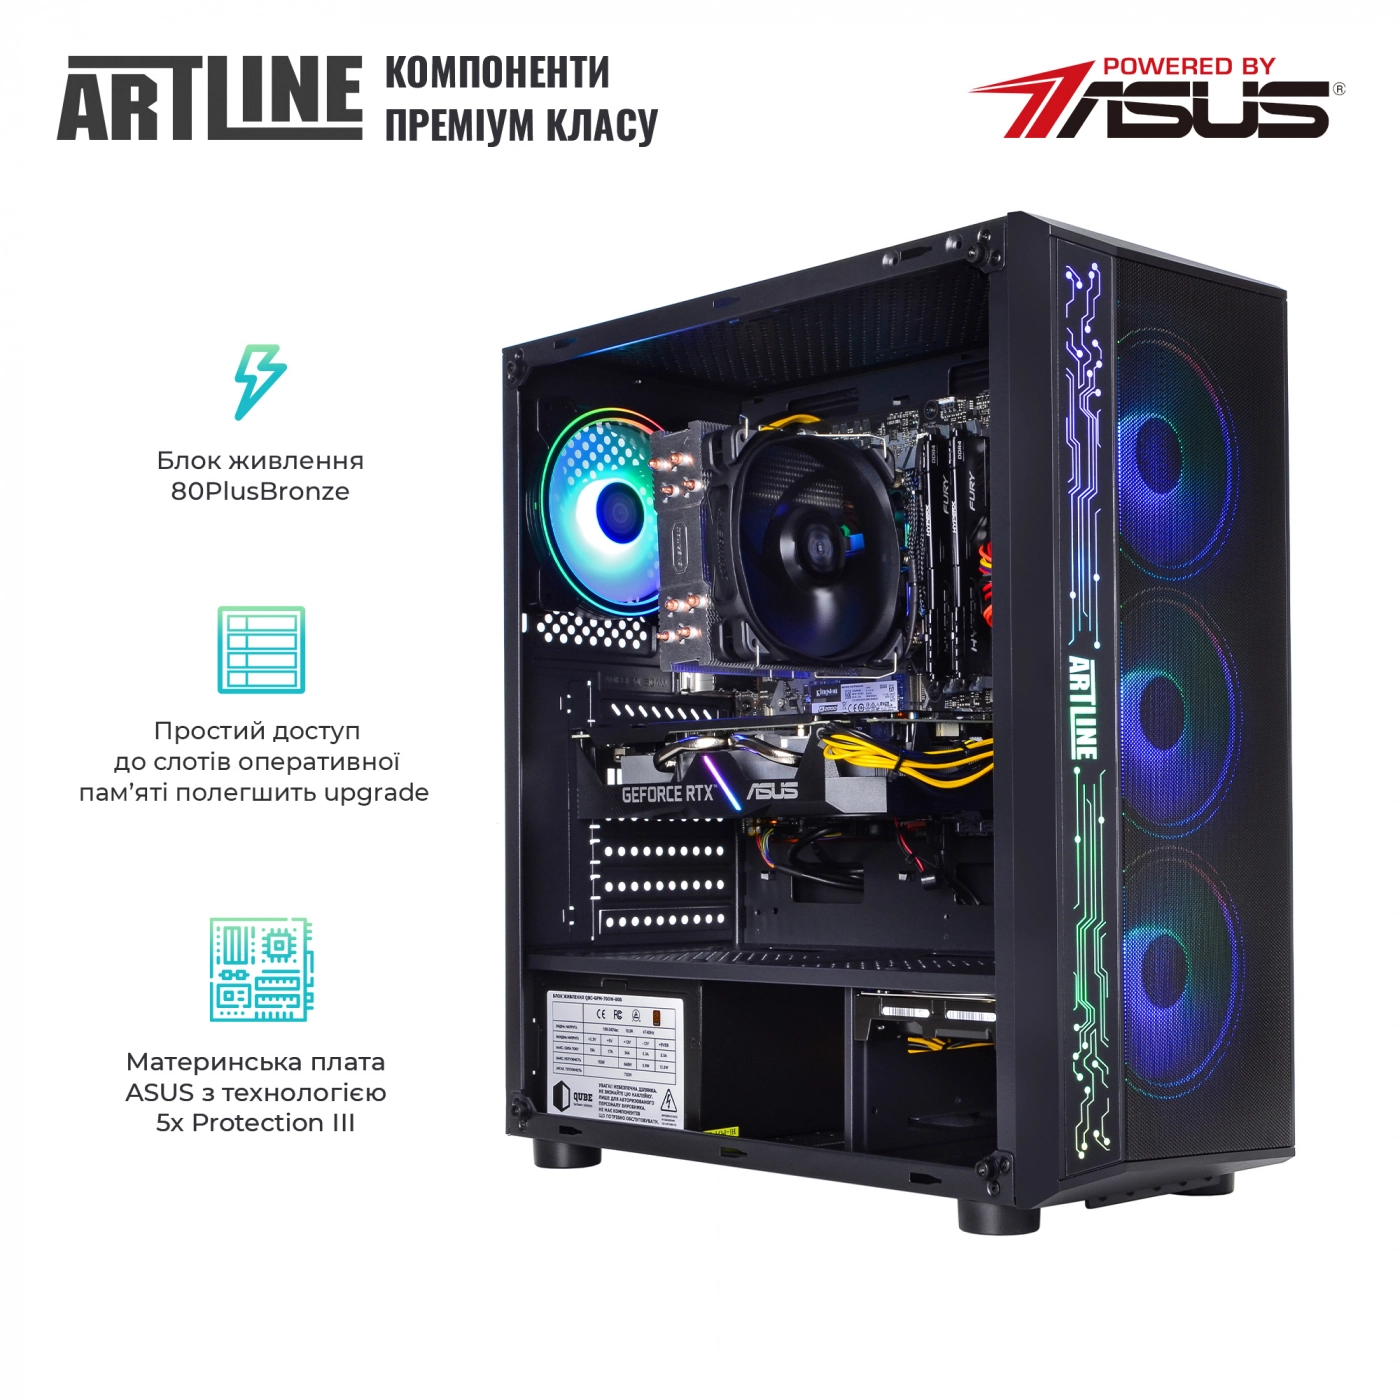 Купить Компьютер ARTLINE Gaming X74v19 - фото 2